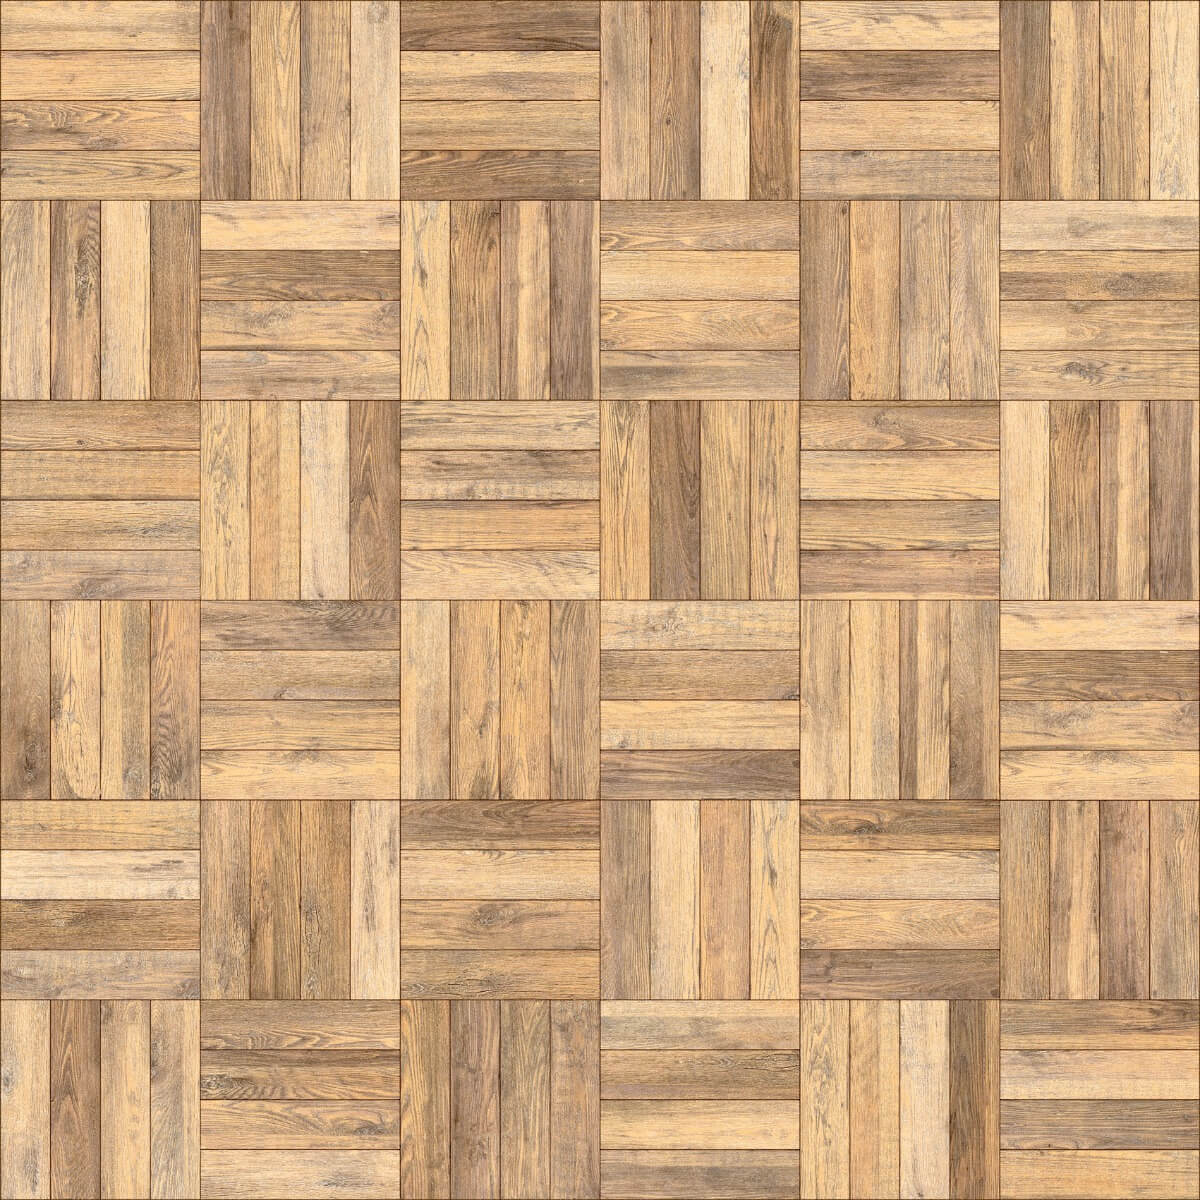 Wooden Tiles for Bar/Restaurant